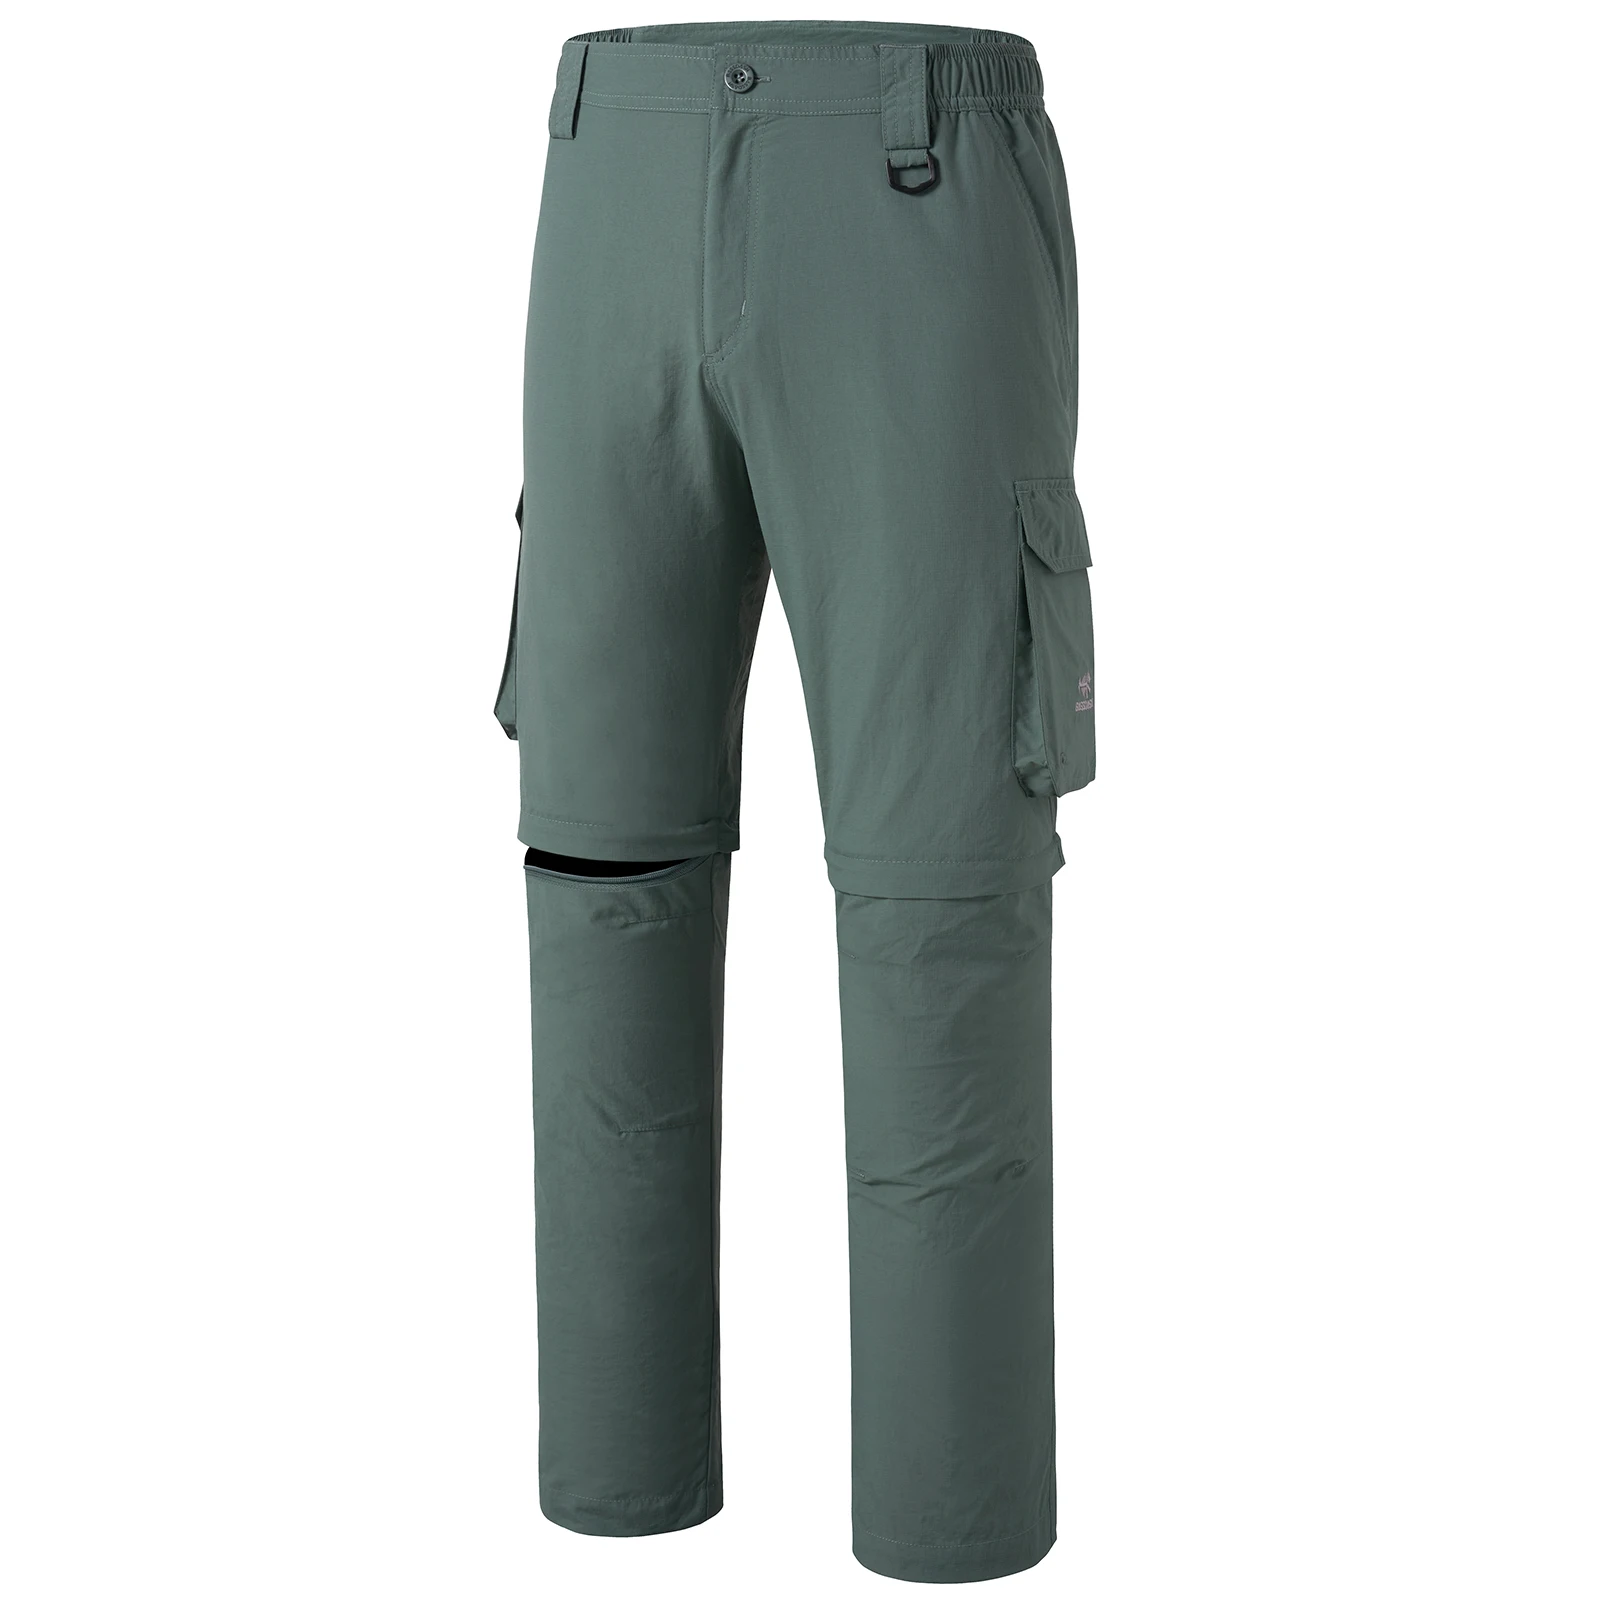 Bassdash Men’s Outdoor Quick Dry Convertible Pants Zip-Off Water Resistant Lightweight Fishing